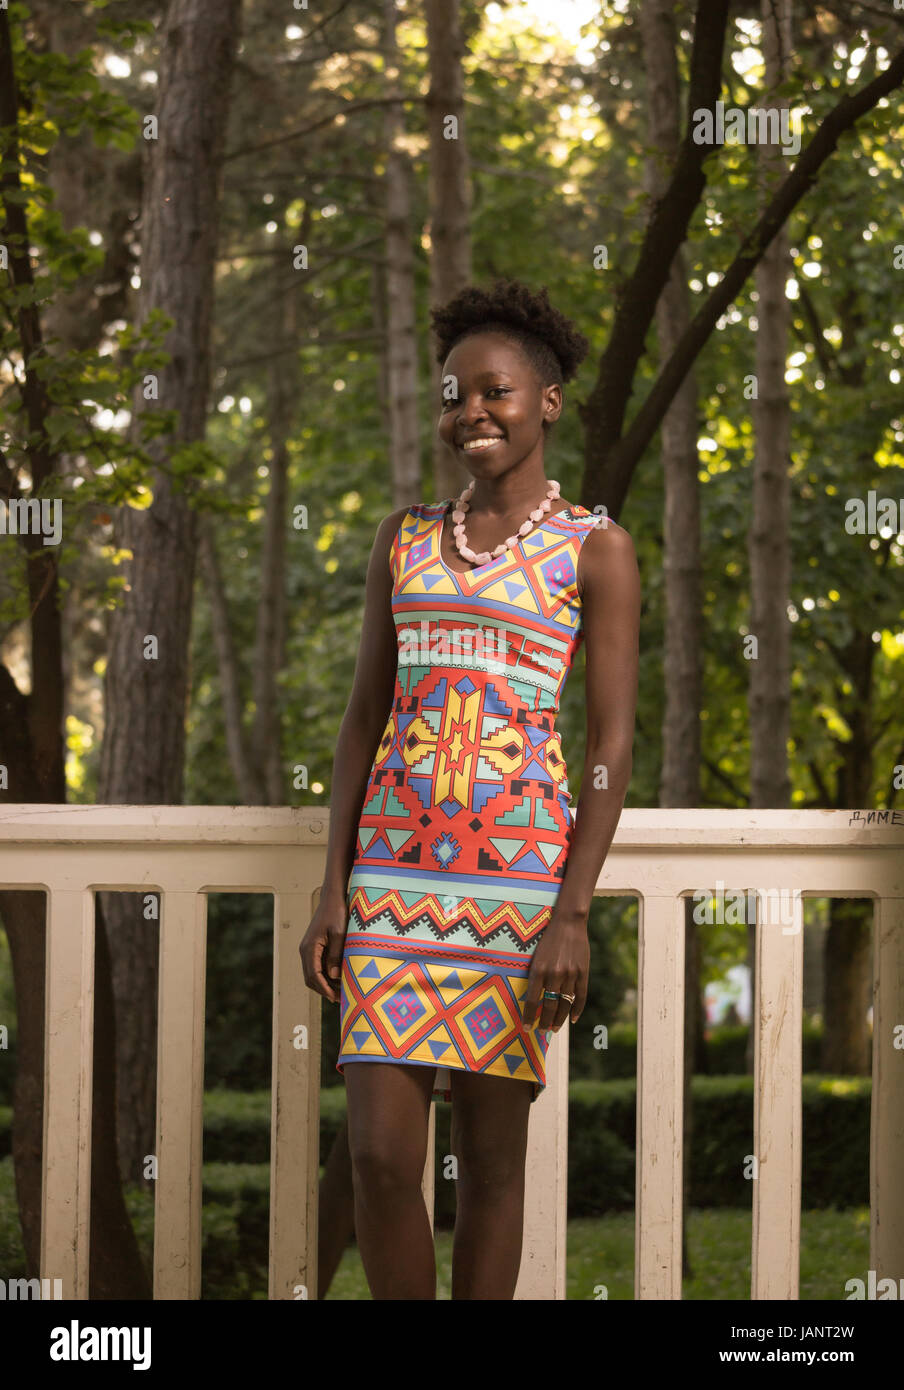 L'un, jeune adulte, black african american happy smiling woman 29 ans, debout, à la recherche d'appareil photo, dehors parc nature de clôture, journée ensoleillée, le port Banque D'Images